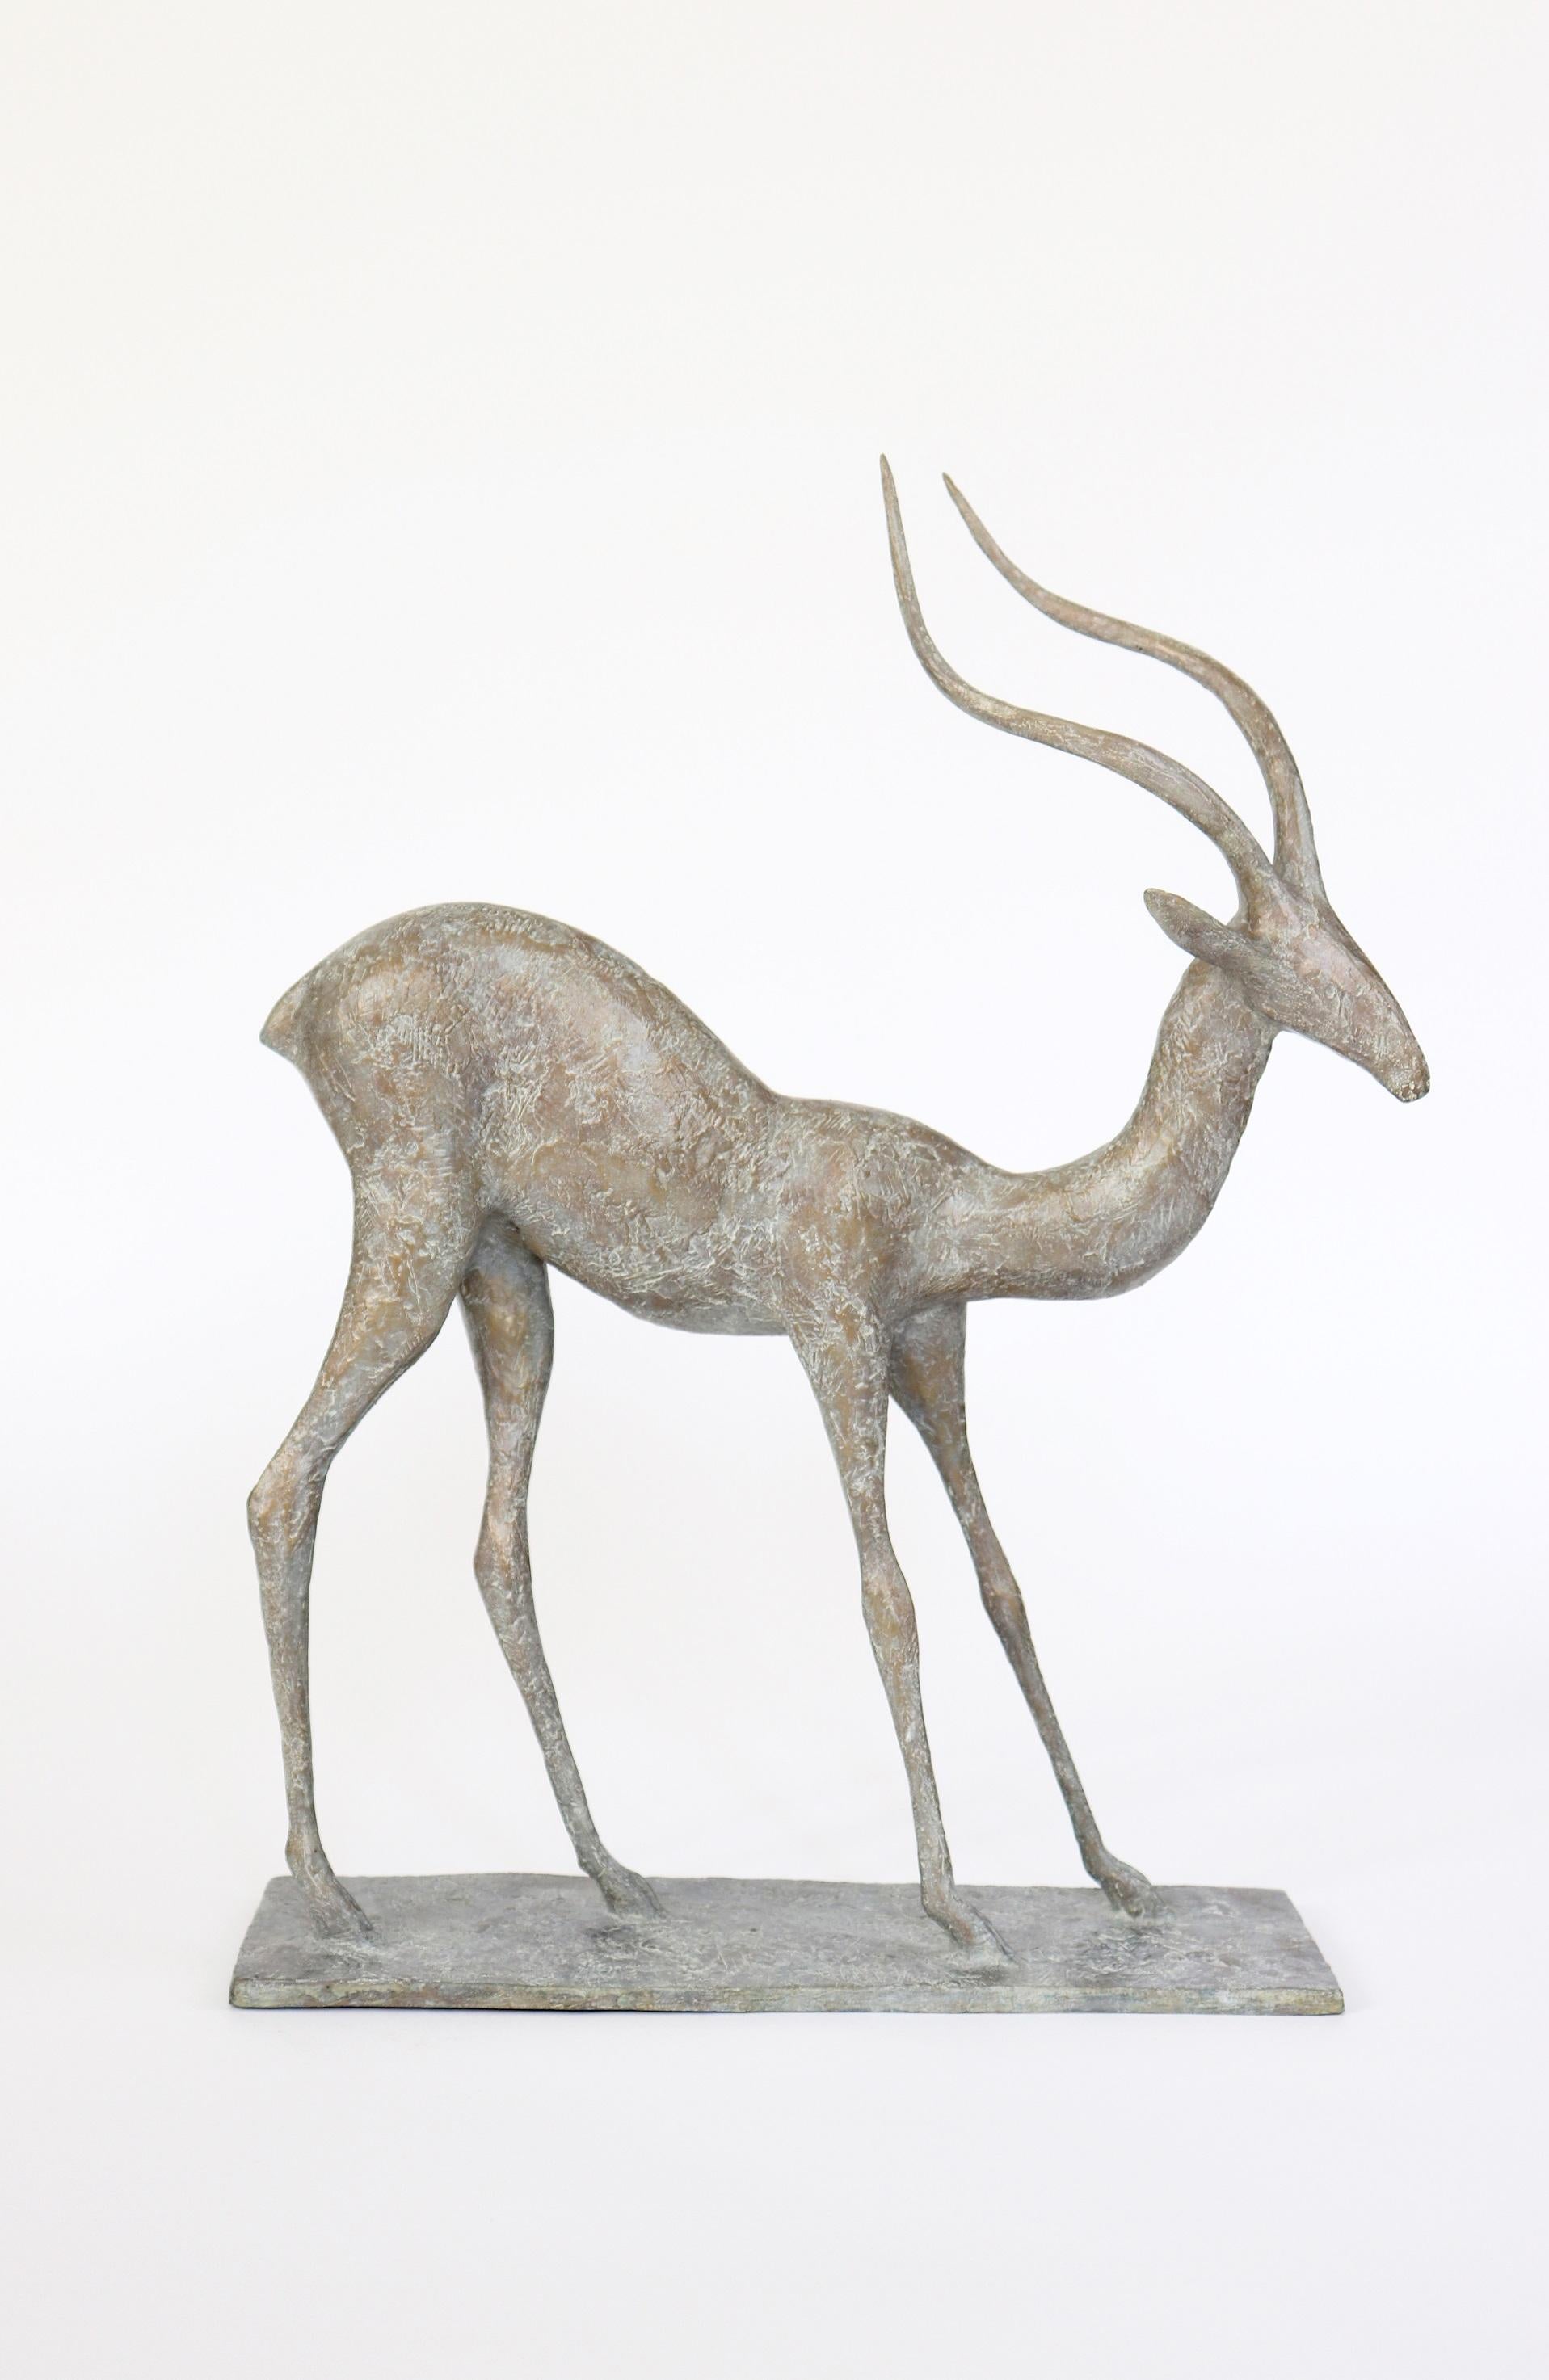 Gazelle III ist eine Bronzeskulptur des französischen zeitgenössischen Künstlers Pierre Yermia mit den Maßen 54 × 41 × 13 cm (21,3 × 16,1 × 5,1 in). 
Die Skulptur ist signiert und nummeriert, gehört zu einer limitierten Auflage von 8 Exemplaren + 4